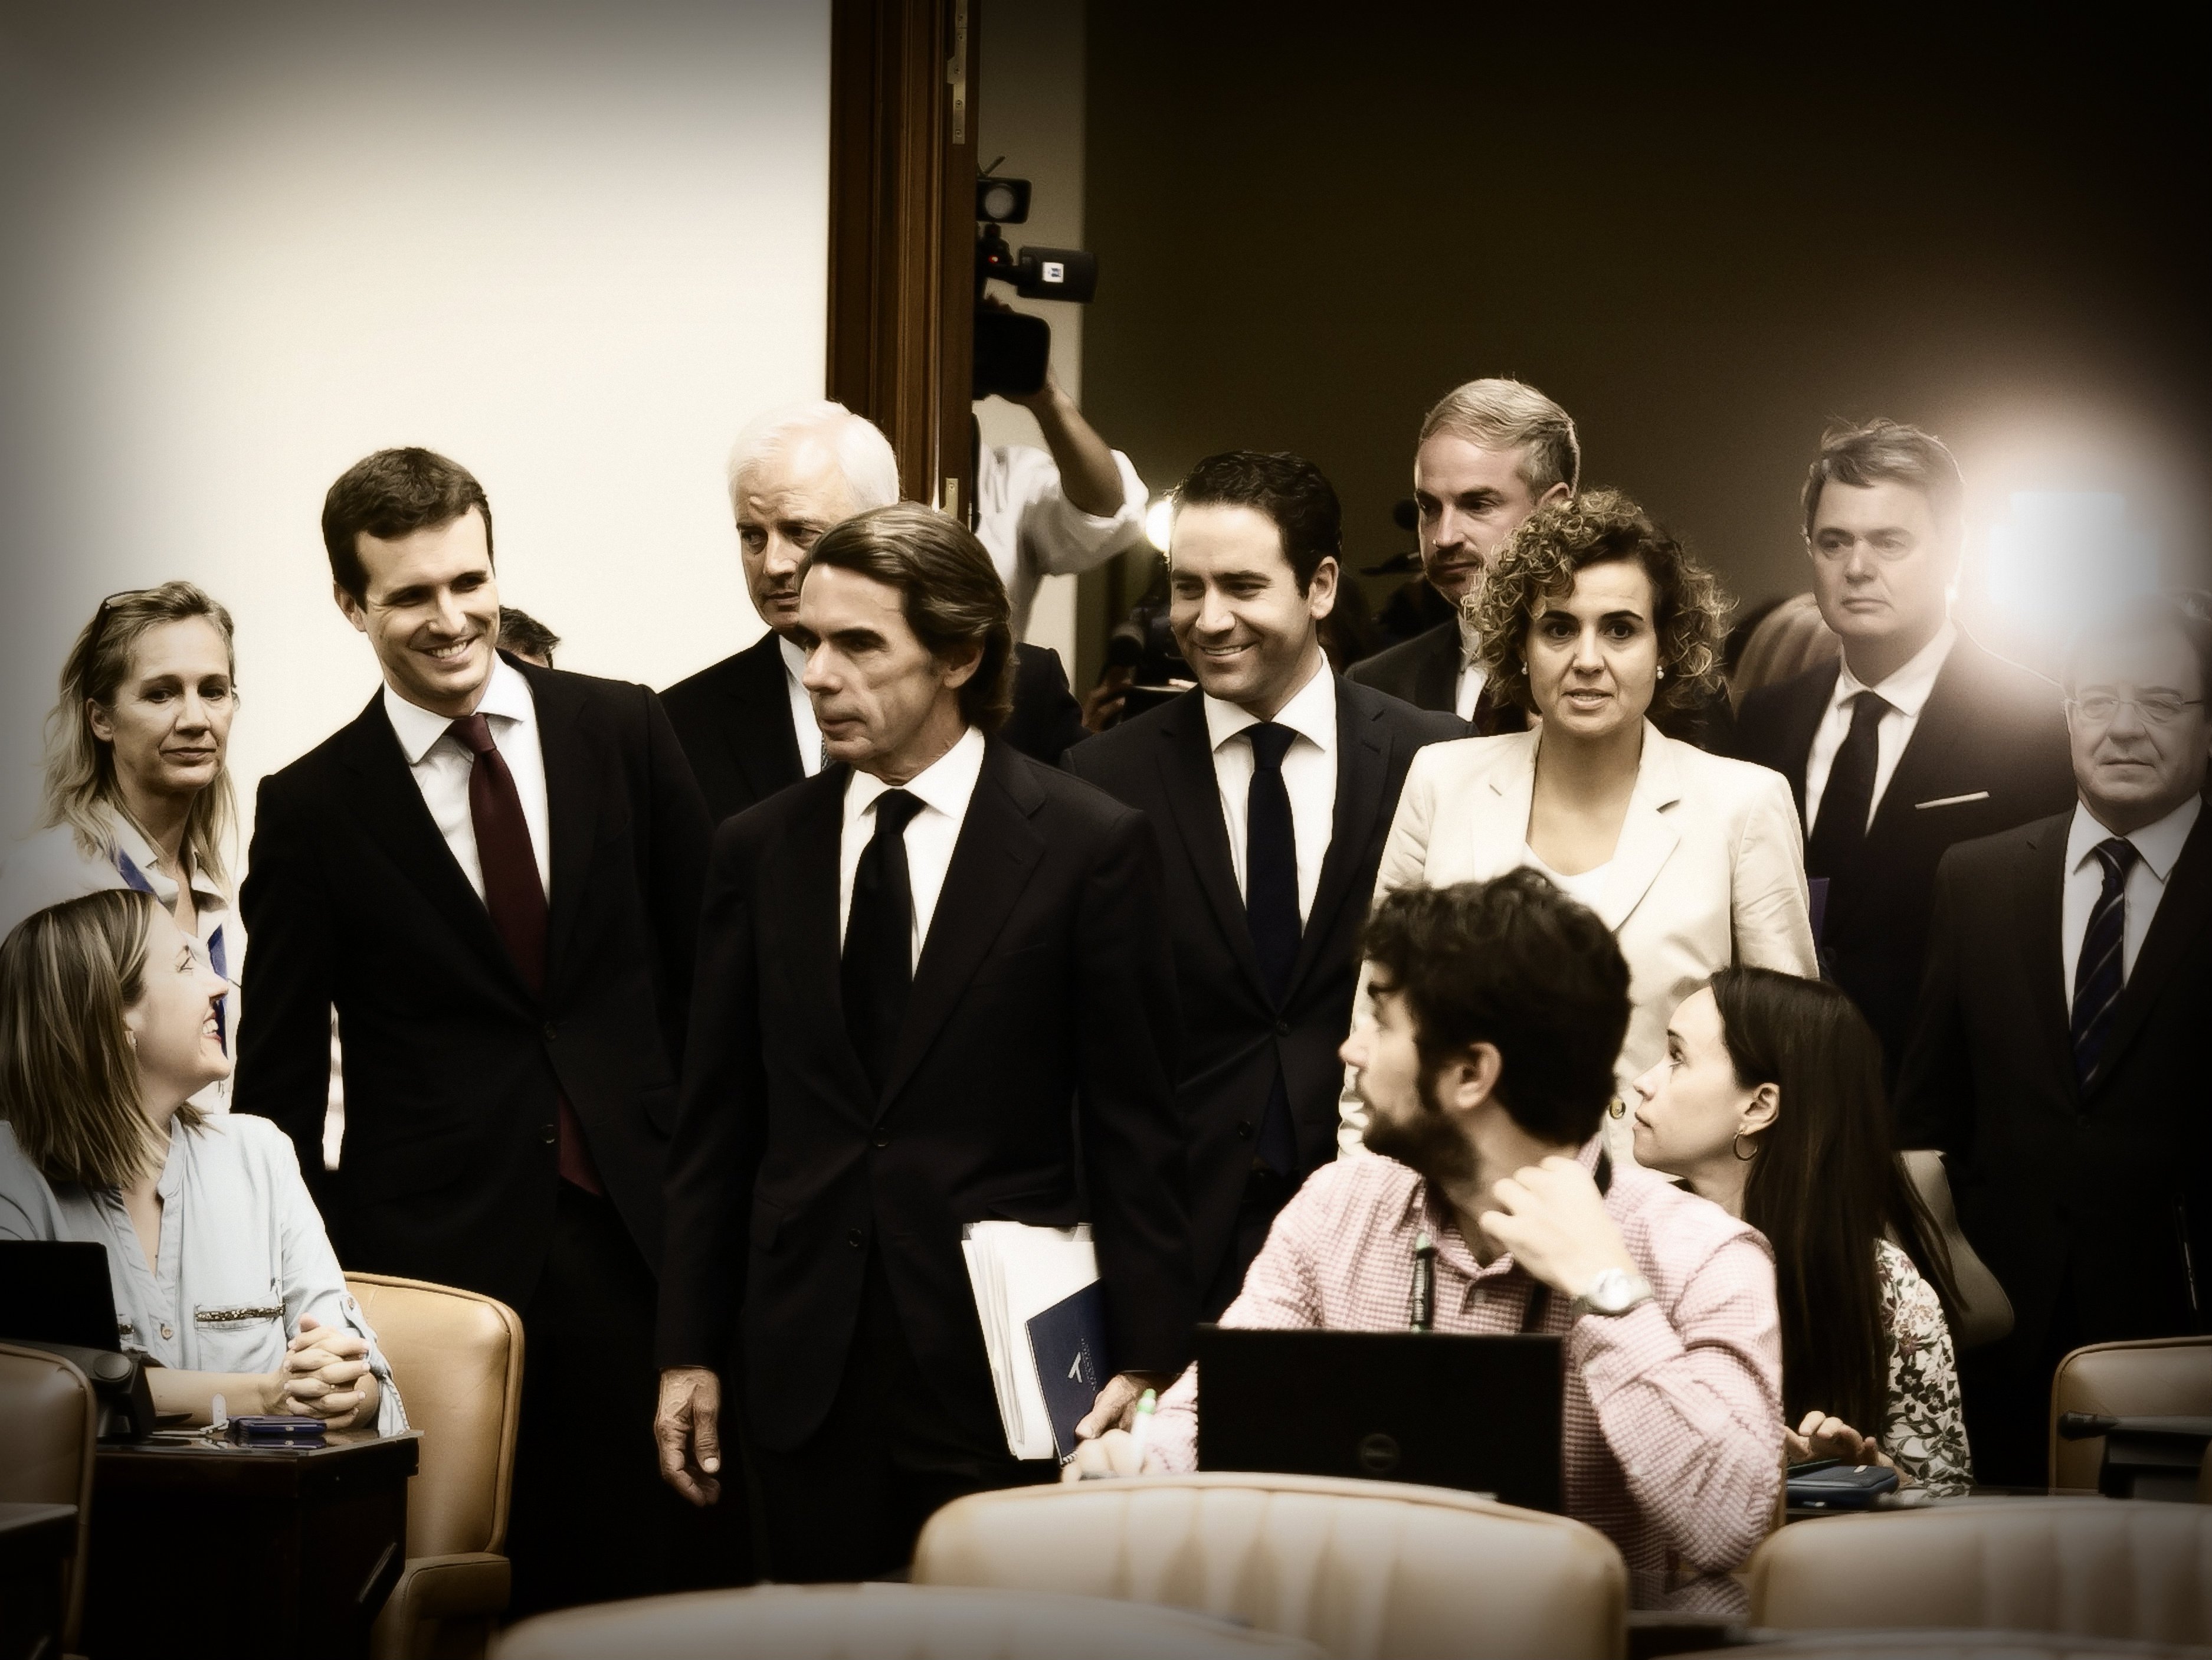 La unció de Casado per Aznar a la premsa nacionalista (espanyola)